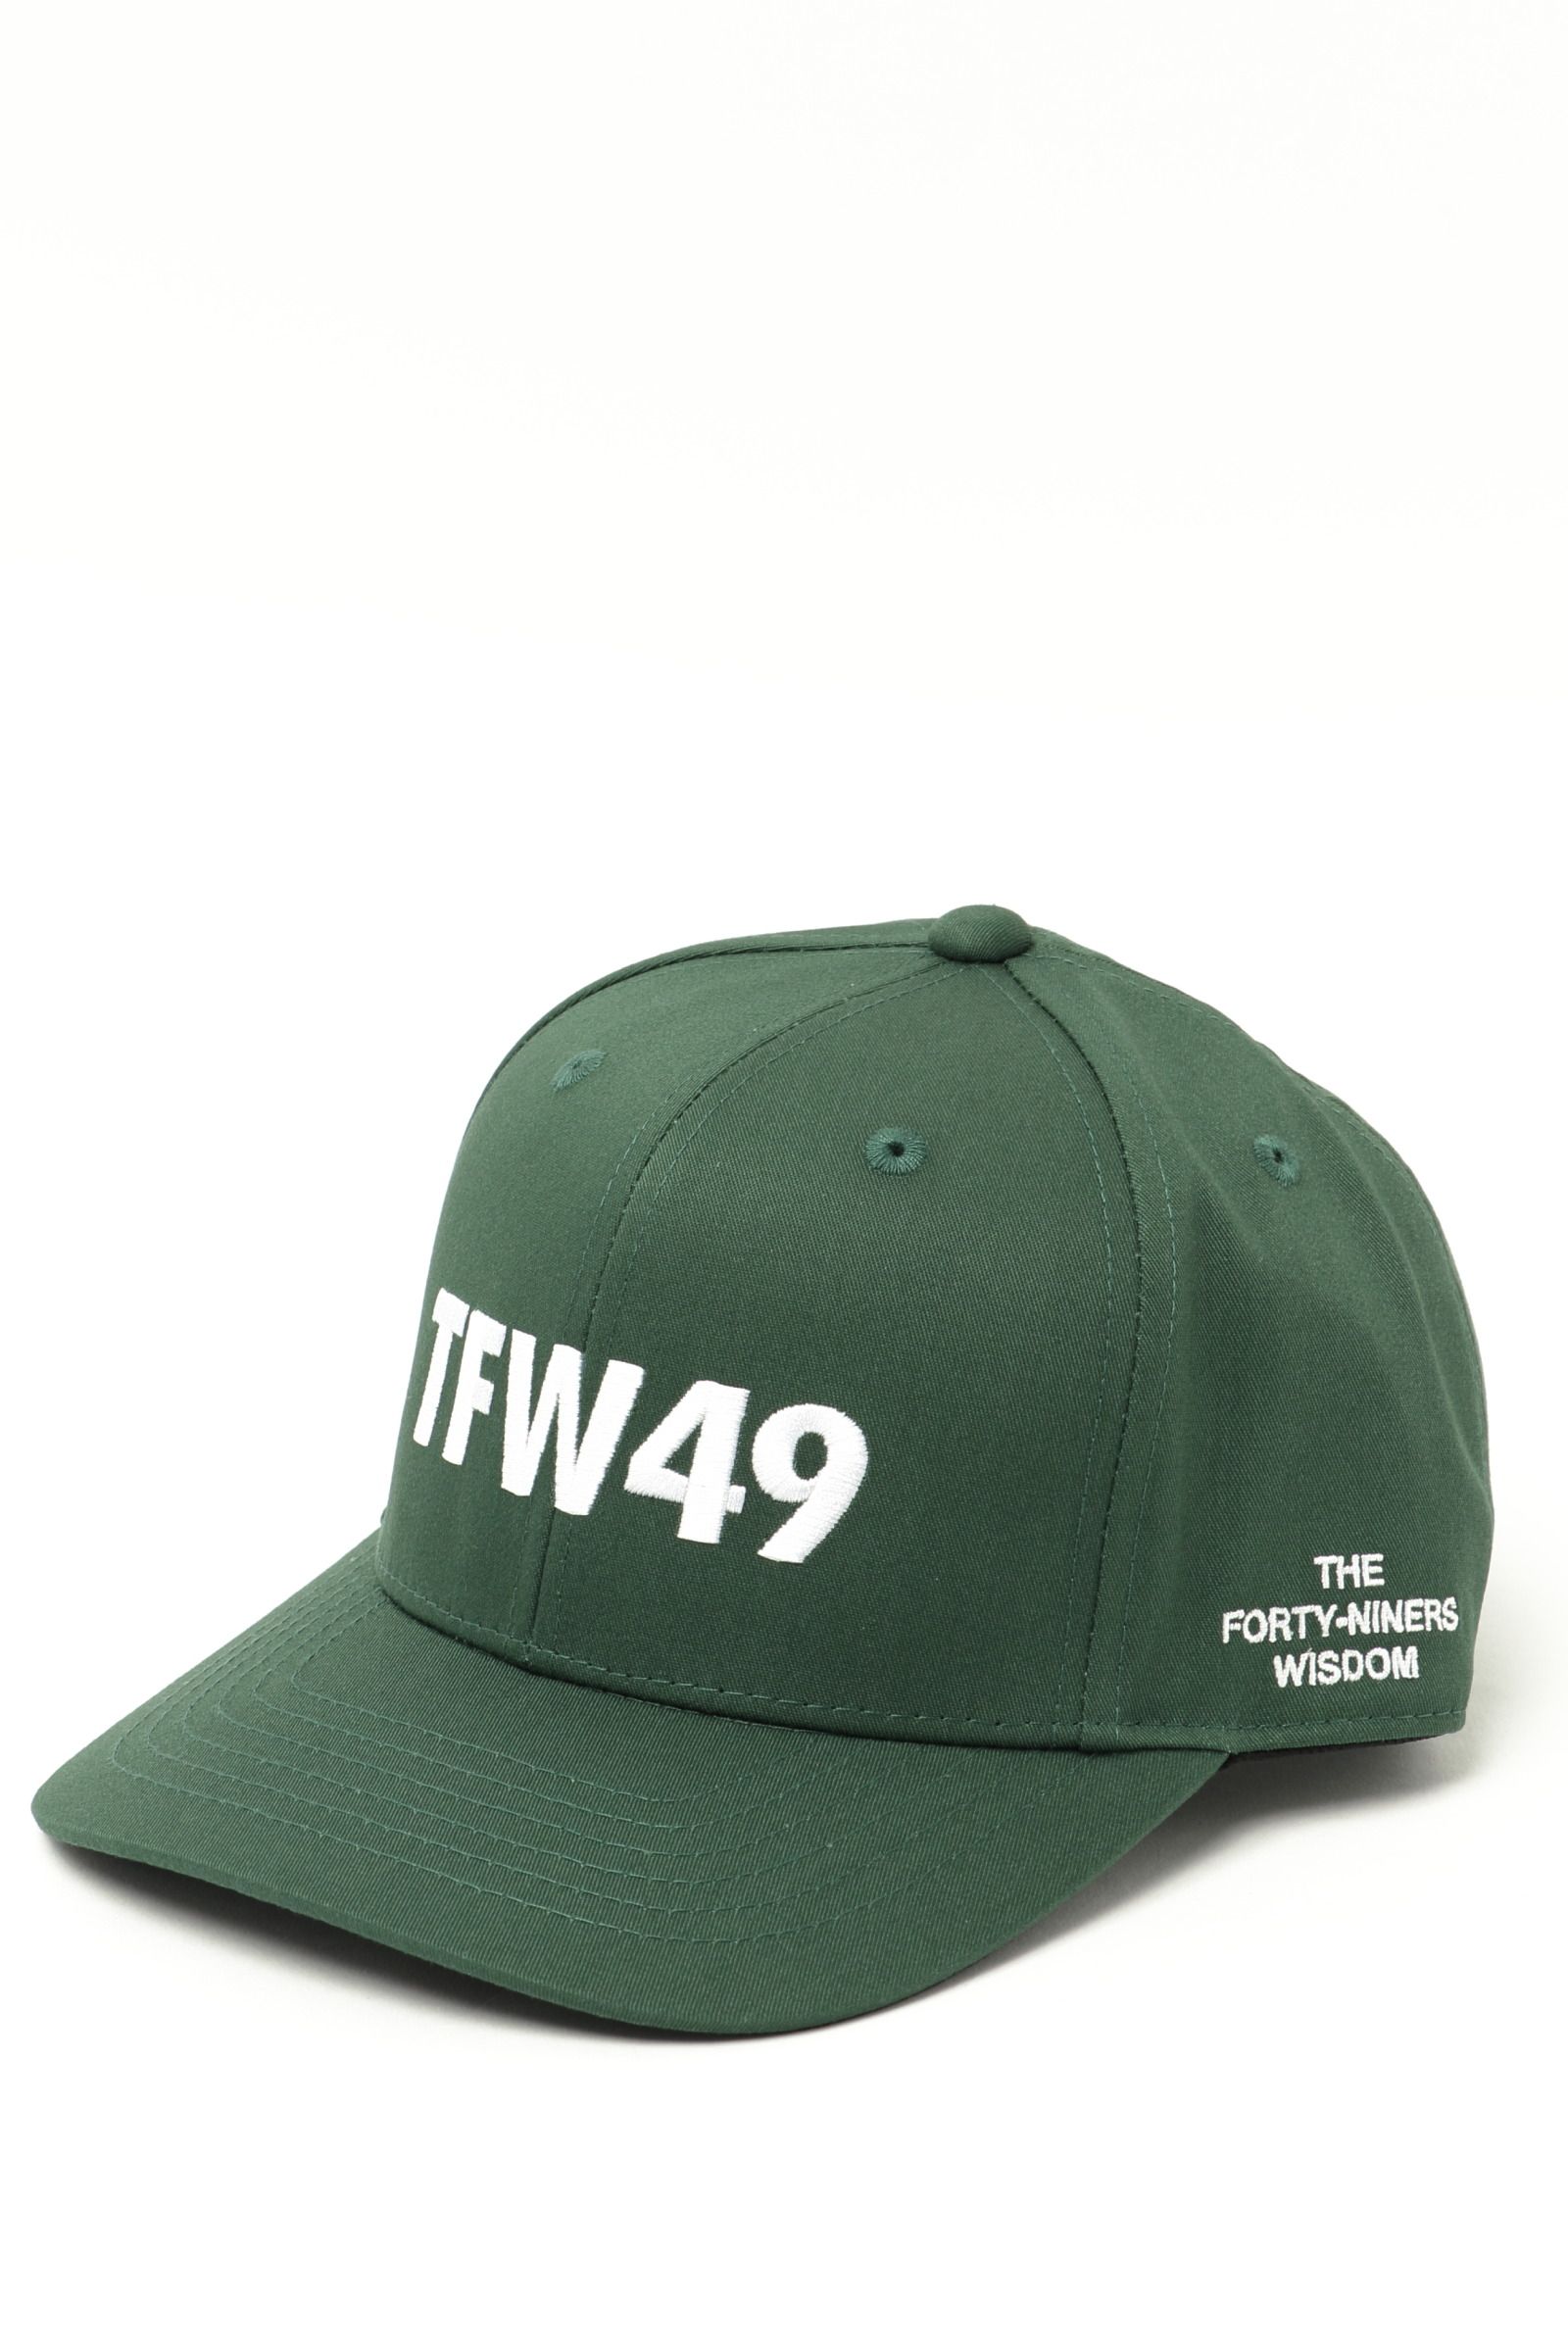 TFW49 - TFW CAP ポリエステル コットン ブランドロゴ キャップ 